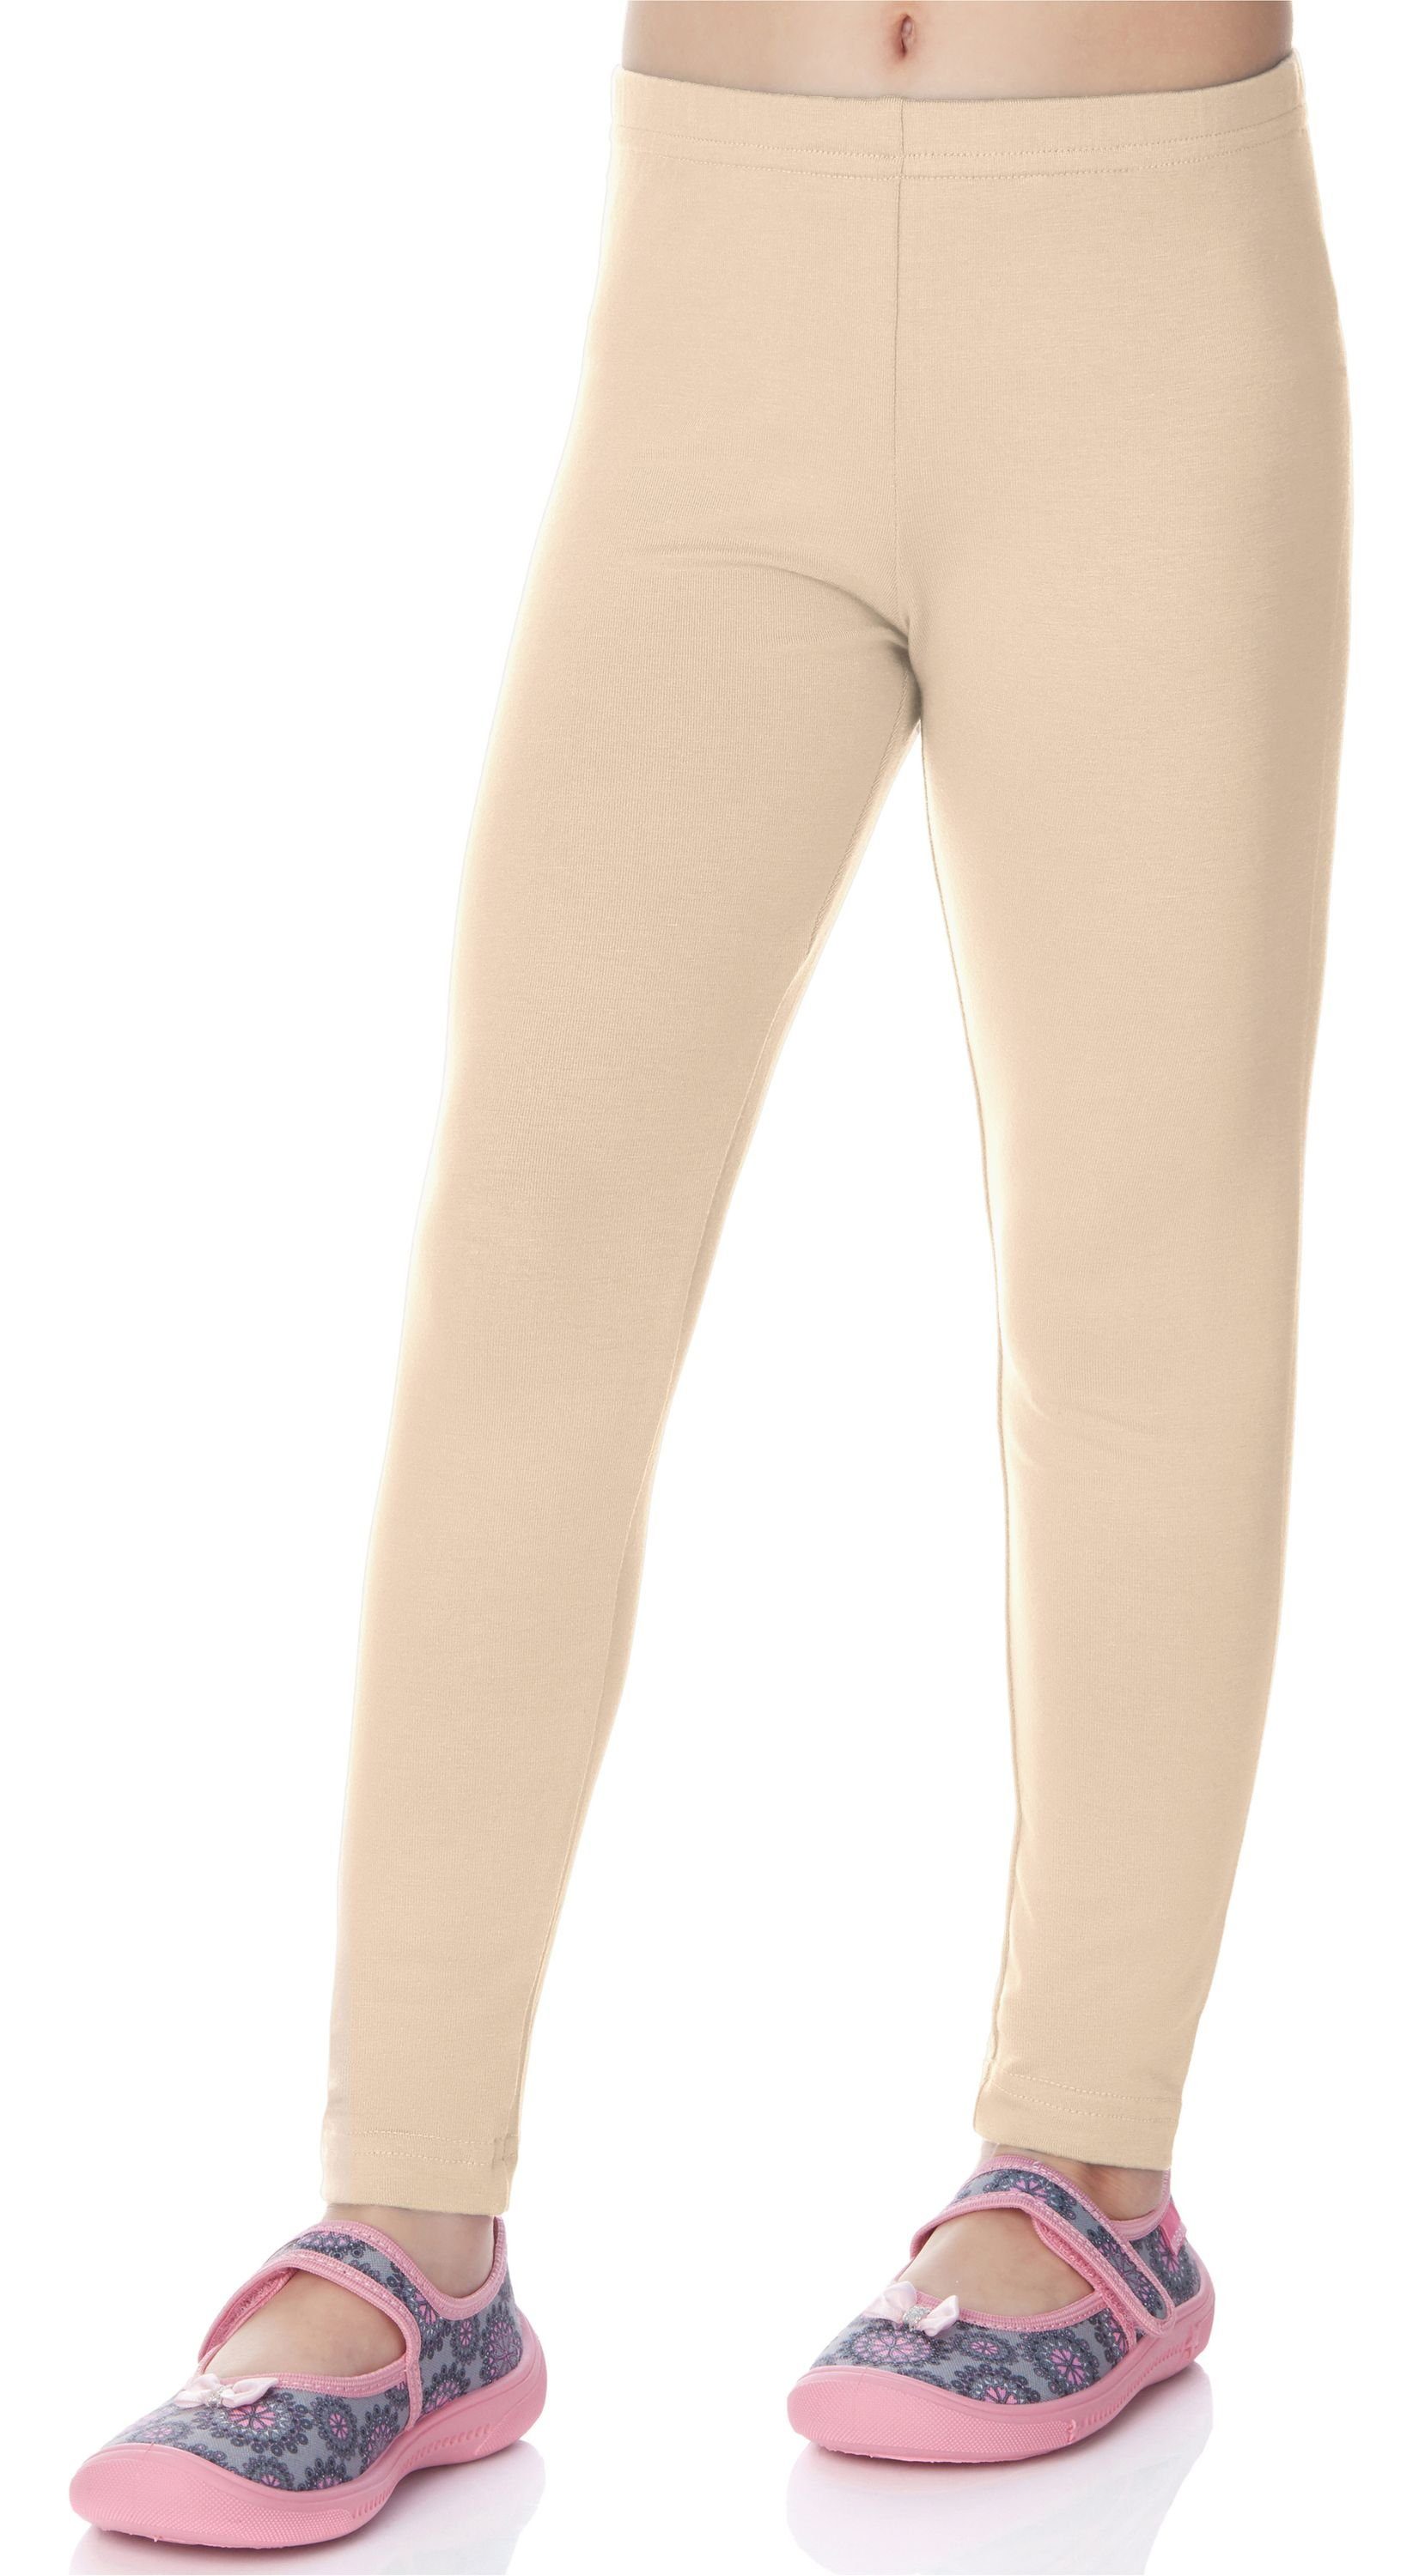 (1-tlg) Bund Merry elastischer Viskose MS10-130 Leggings Style Mädchen Lange Beige-1 Leggings aus